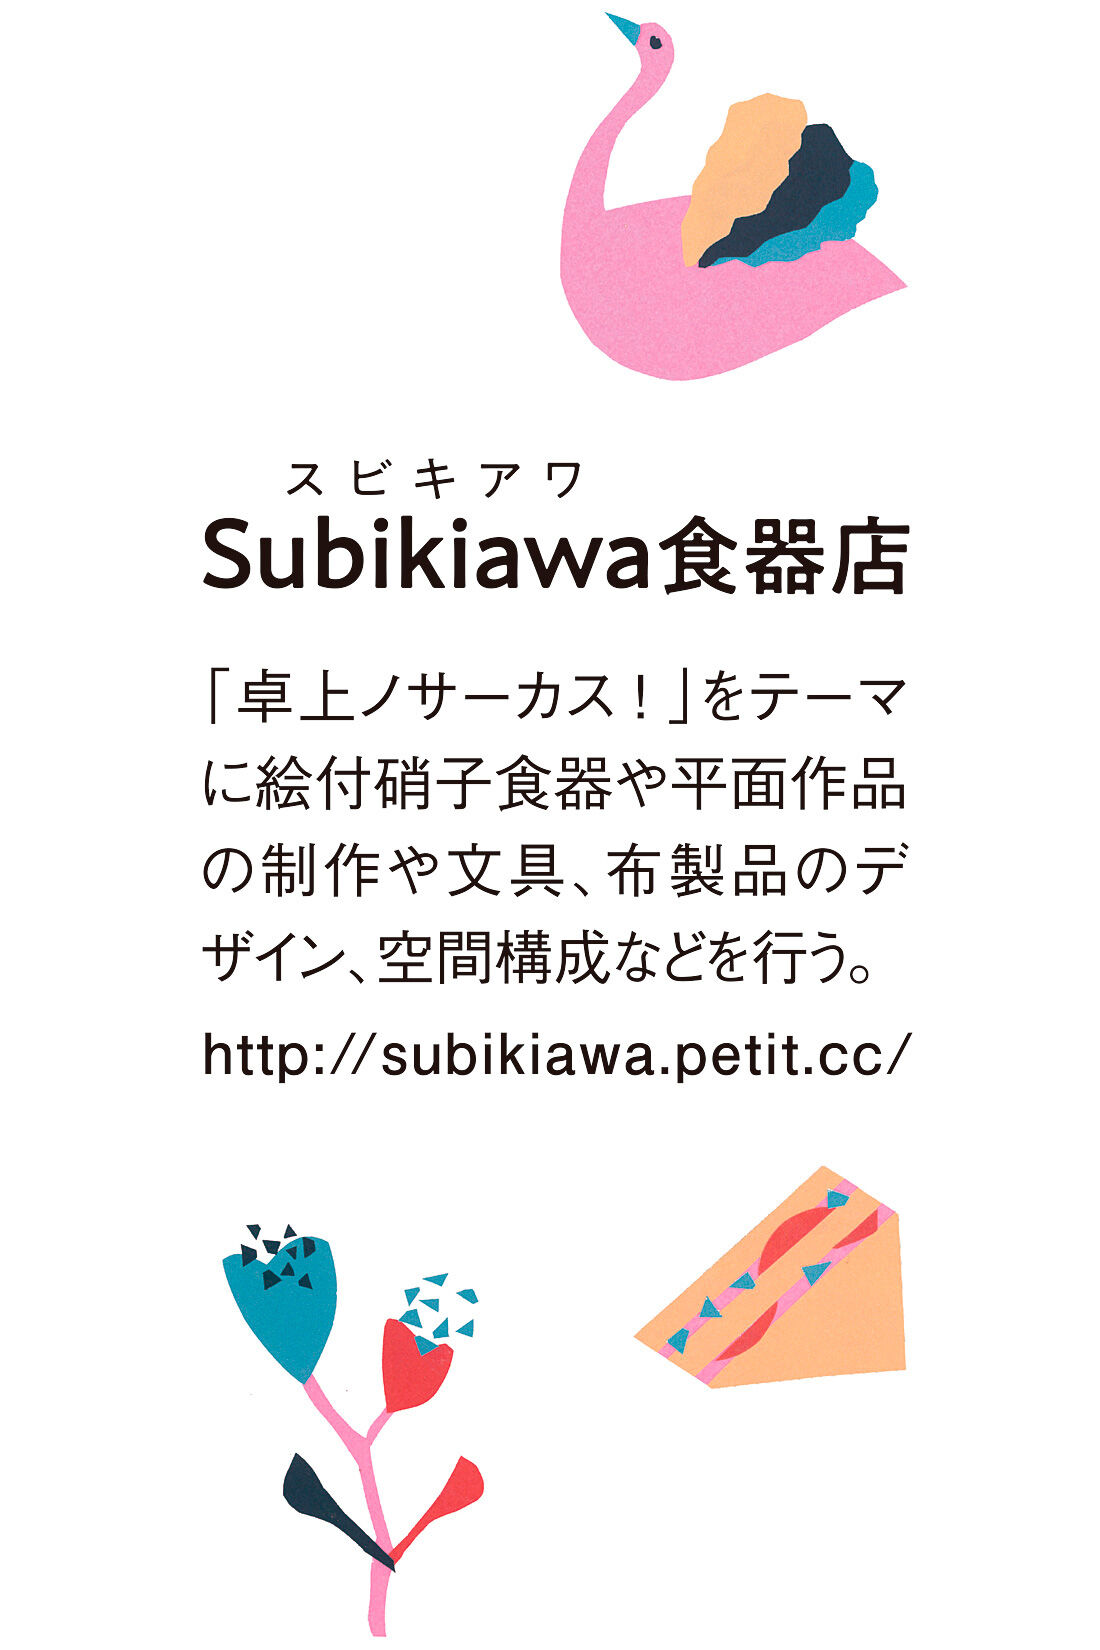 Live in  comfort|リブ イン コンフォート 京都Subikiawa食器店さんとつくった「明日のパフェー」コットンキルティングキッズパジャマ〈グレー〉